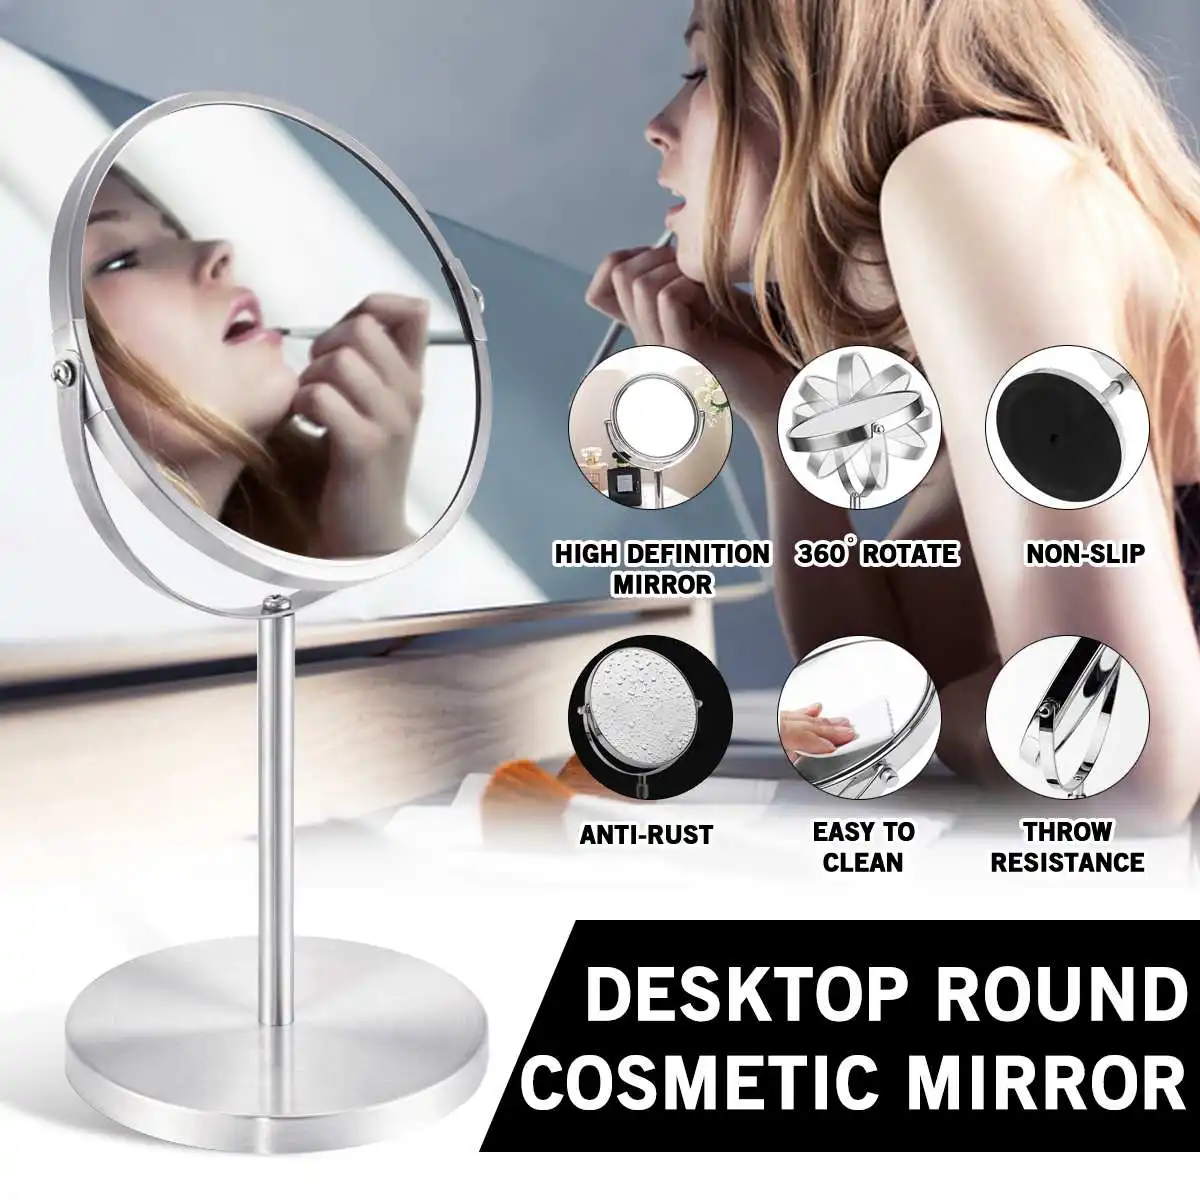 Увеличительное зеркало для макияжа косметические зеркала вращающиеся круглые формы двойные двусторонние зеркала для леди стол устанавливаемый на стол комод